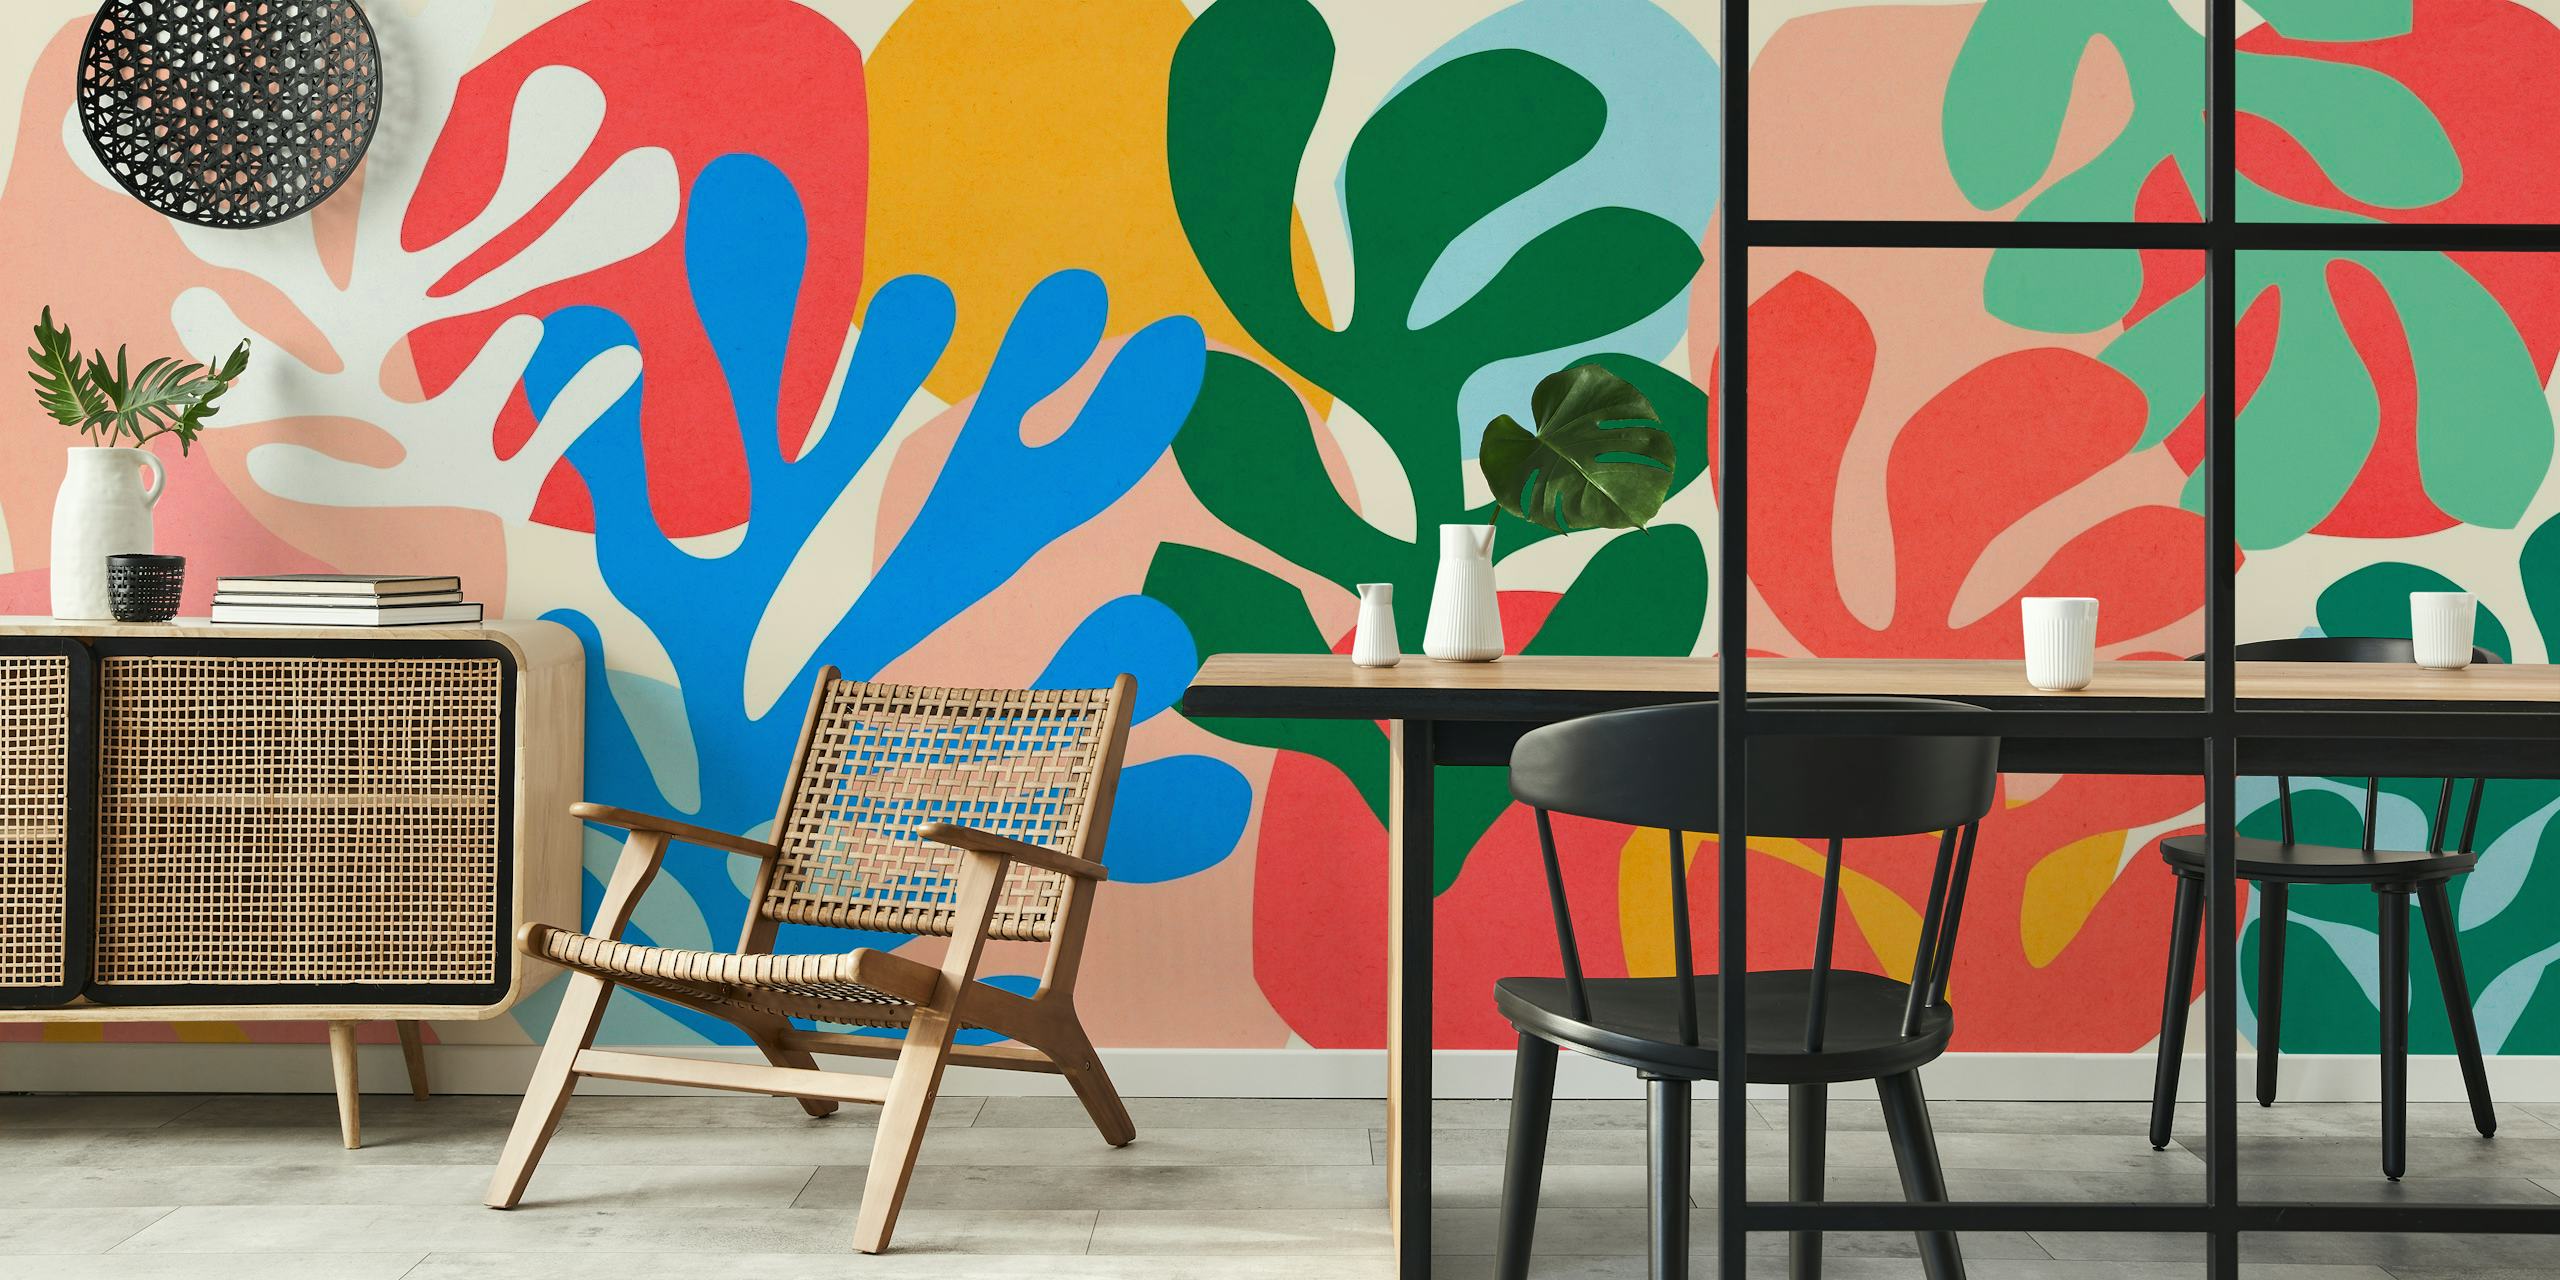 Apstraktni botanički zidni mural sa živopisnim izrezom nadahnutim Matisseom